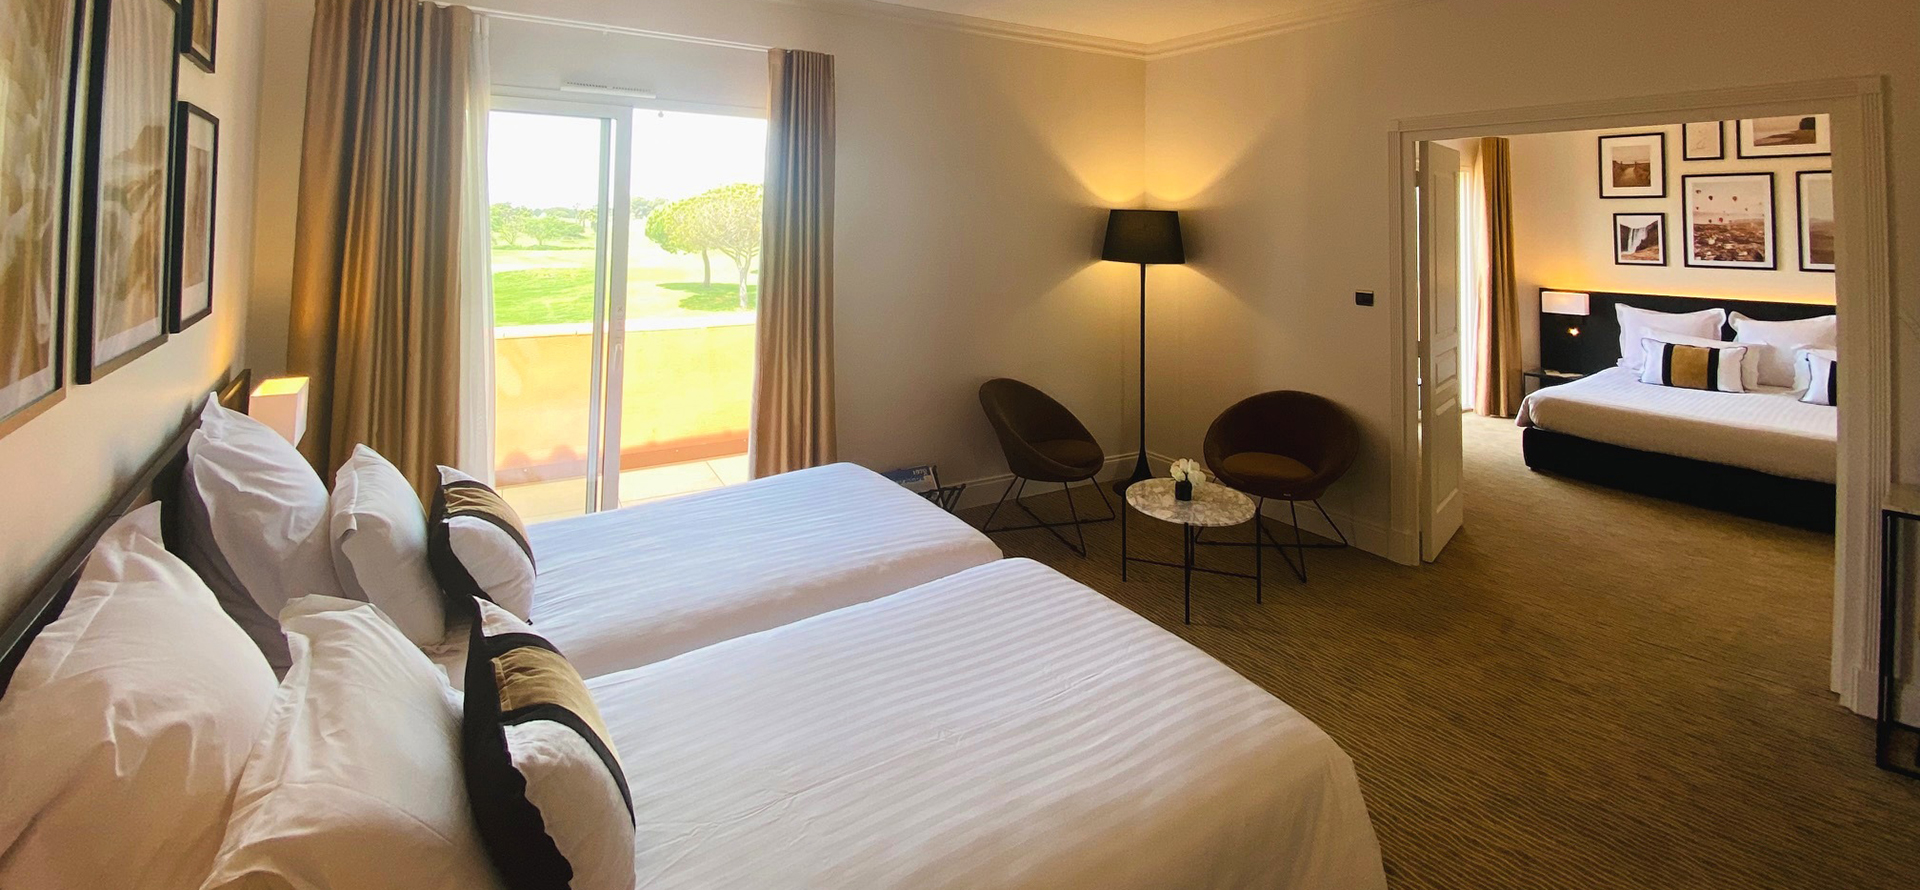 Vue d’une suite du Palmyra Golf, hôtel avec spa en Occitanie, composée d’un 1 lit 2 places